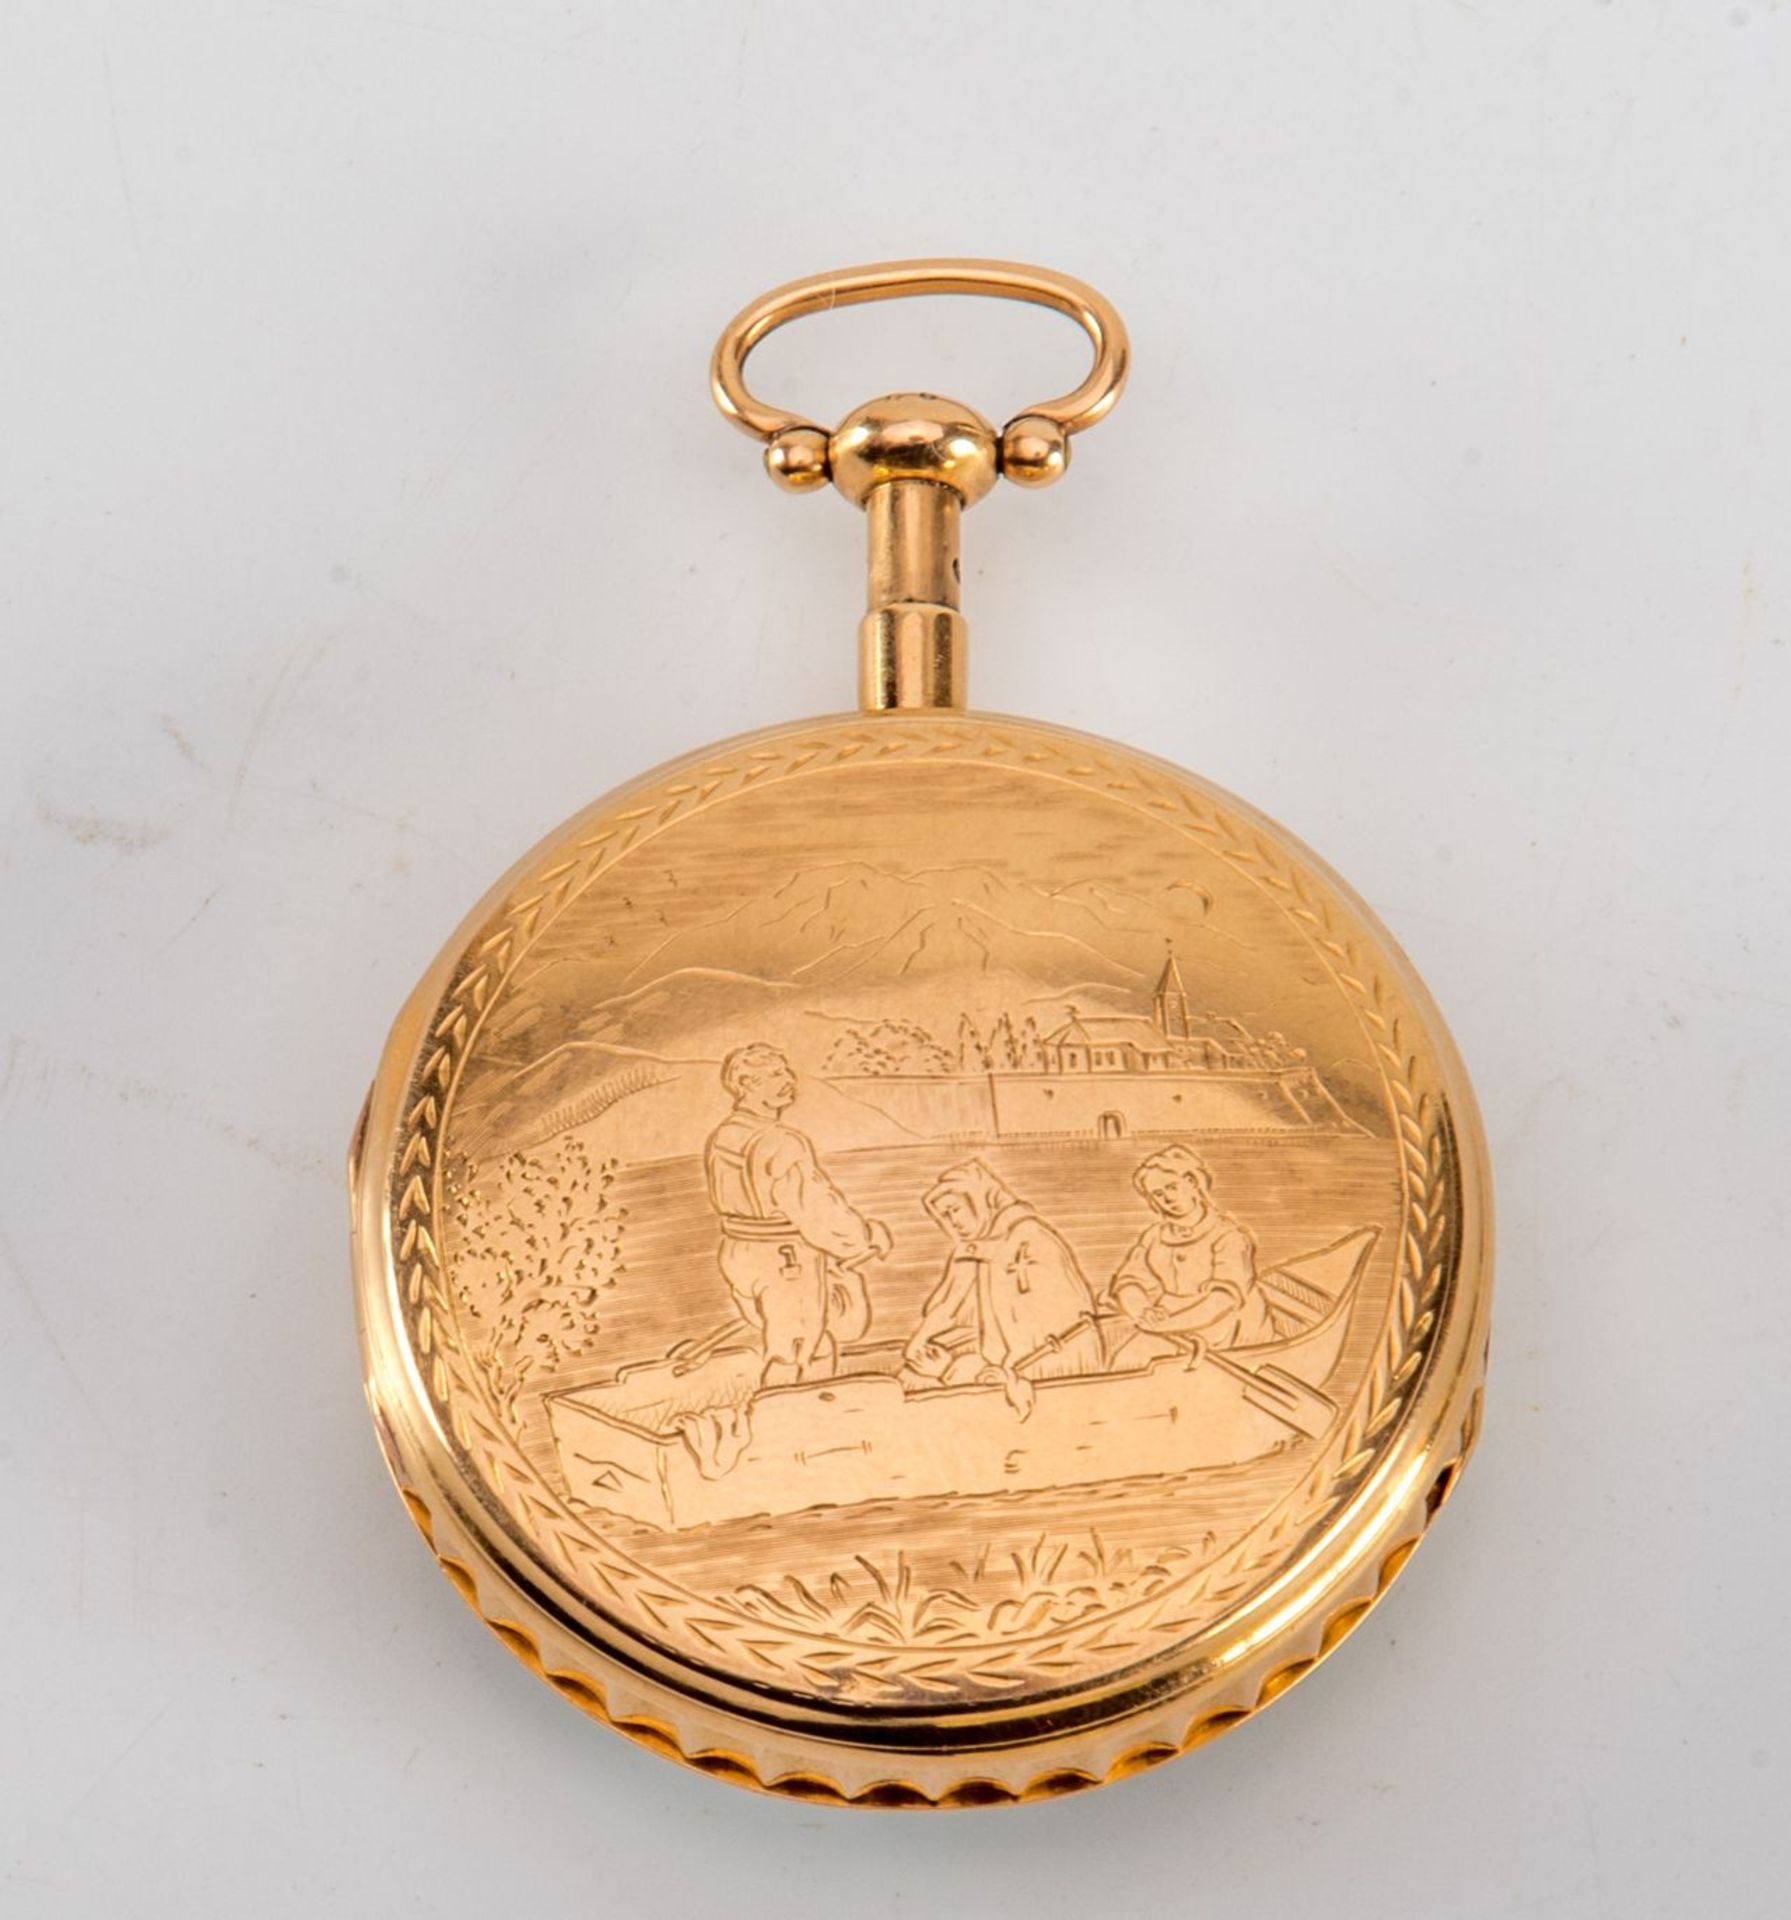 Goldene Empire Taschenuhr mit RepetitionParis, um 1800 .Emailzifferblatt mit arabischen Ziffern, - Bild 2 aus 3